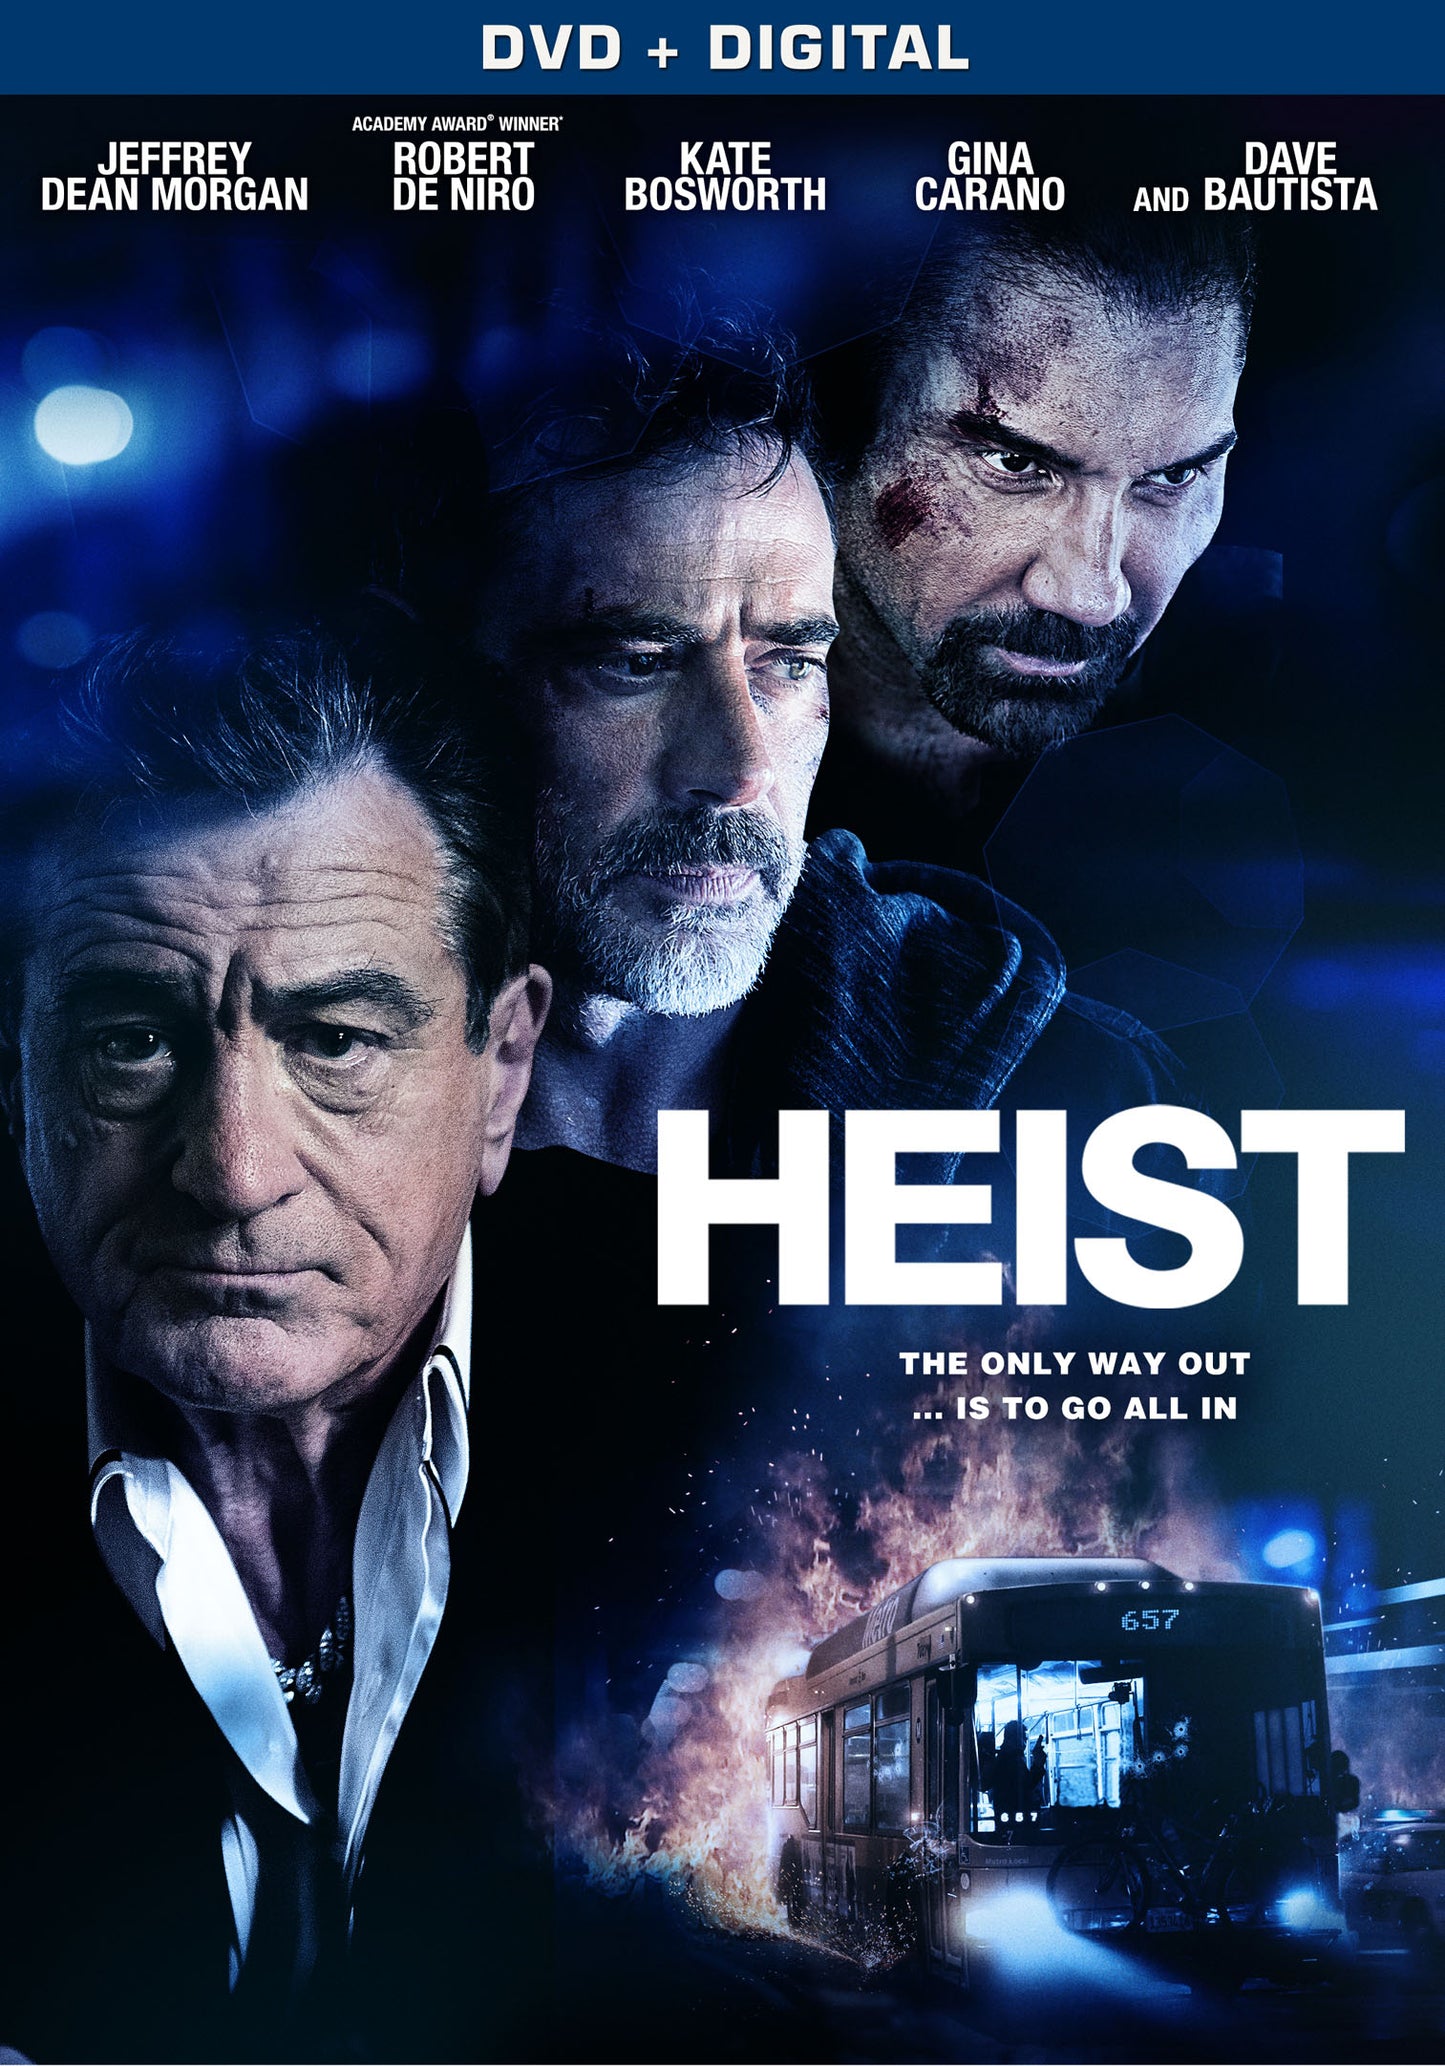 Heist cover art